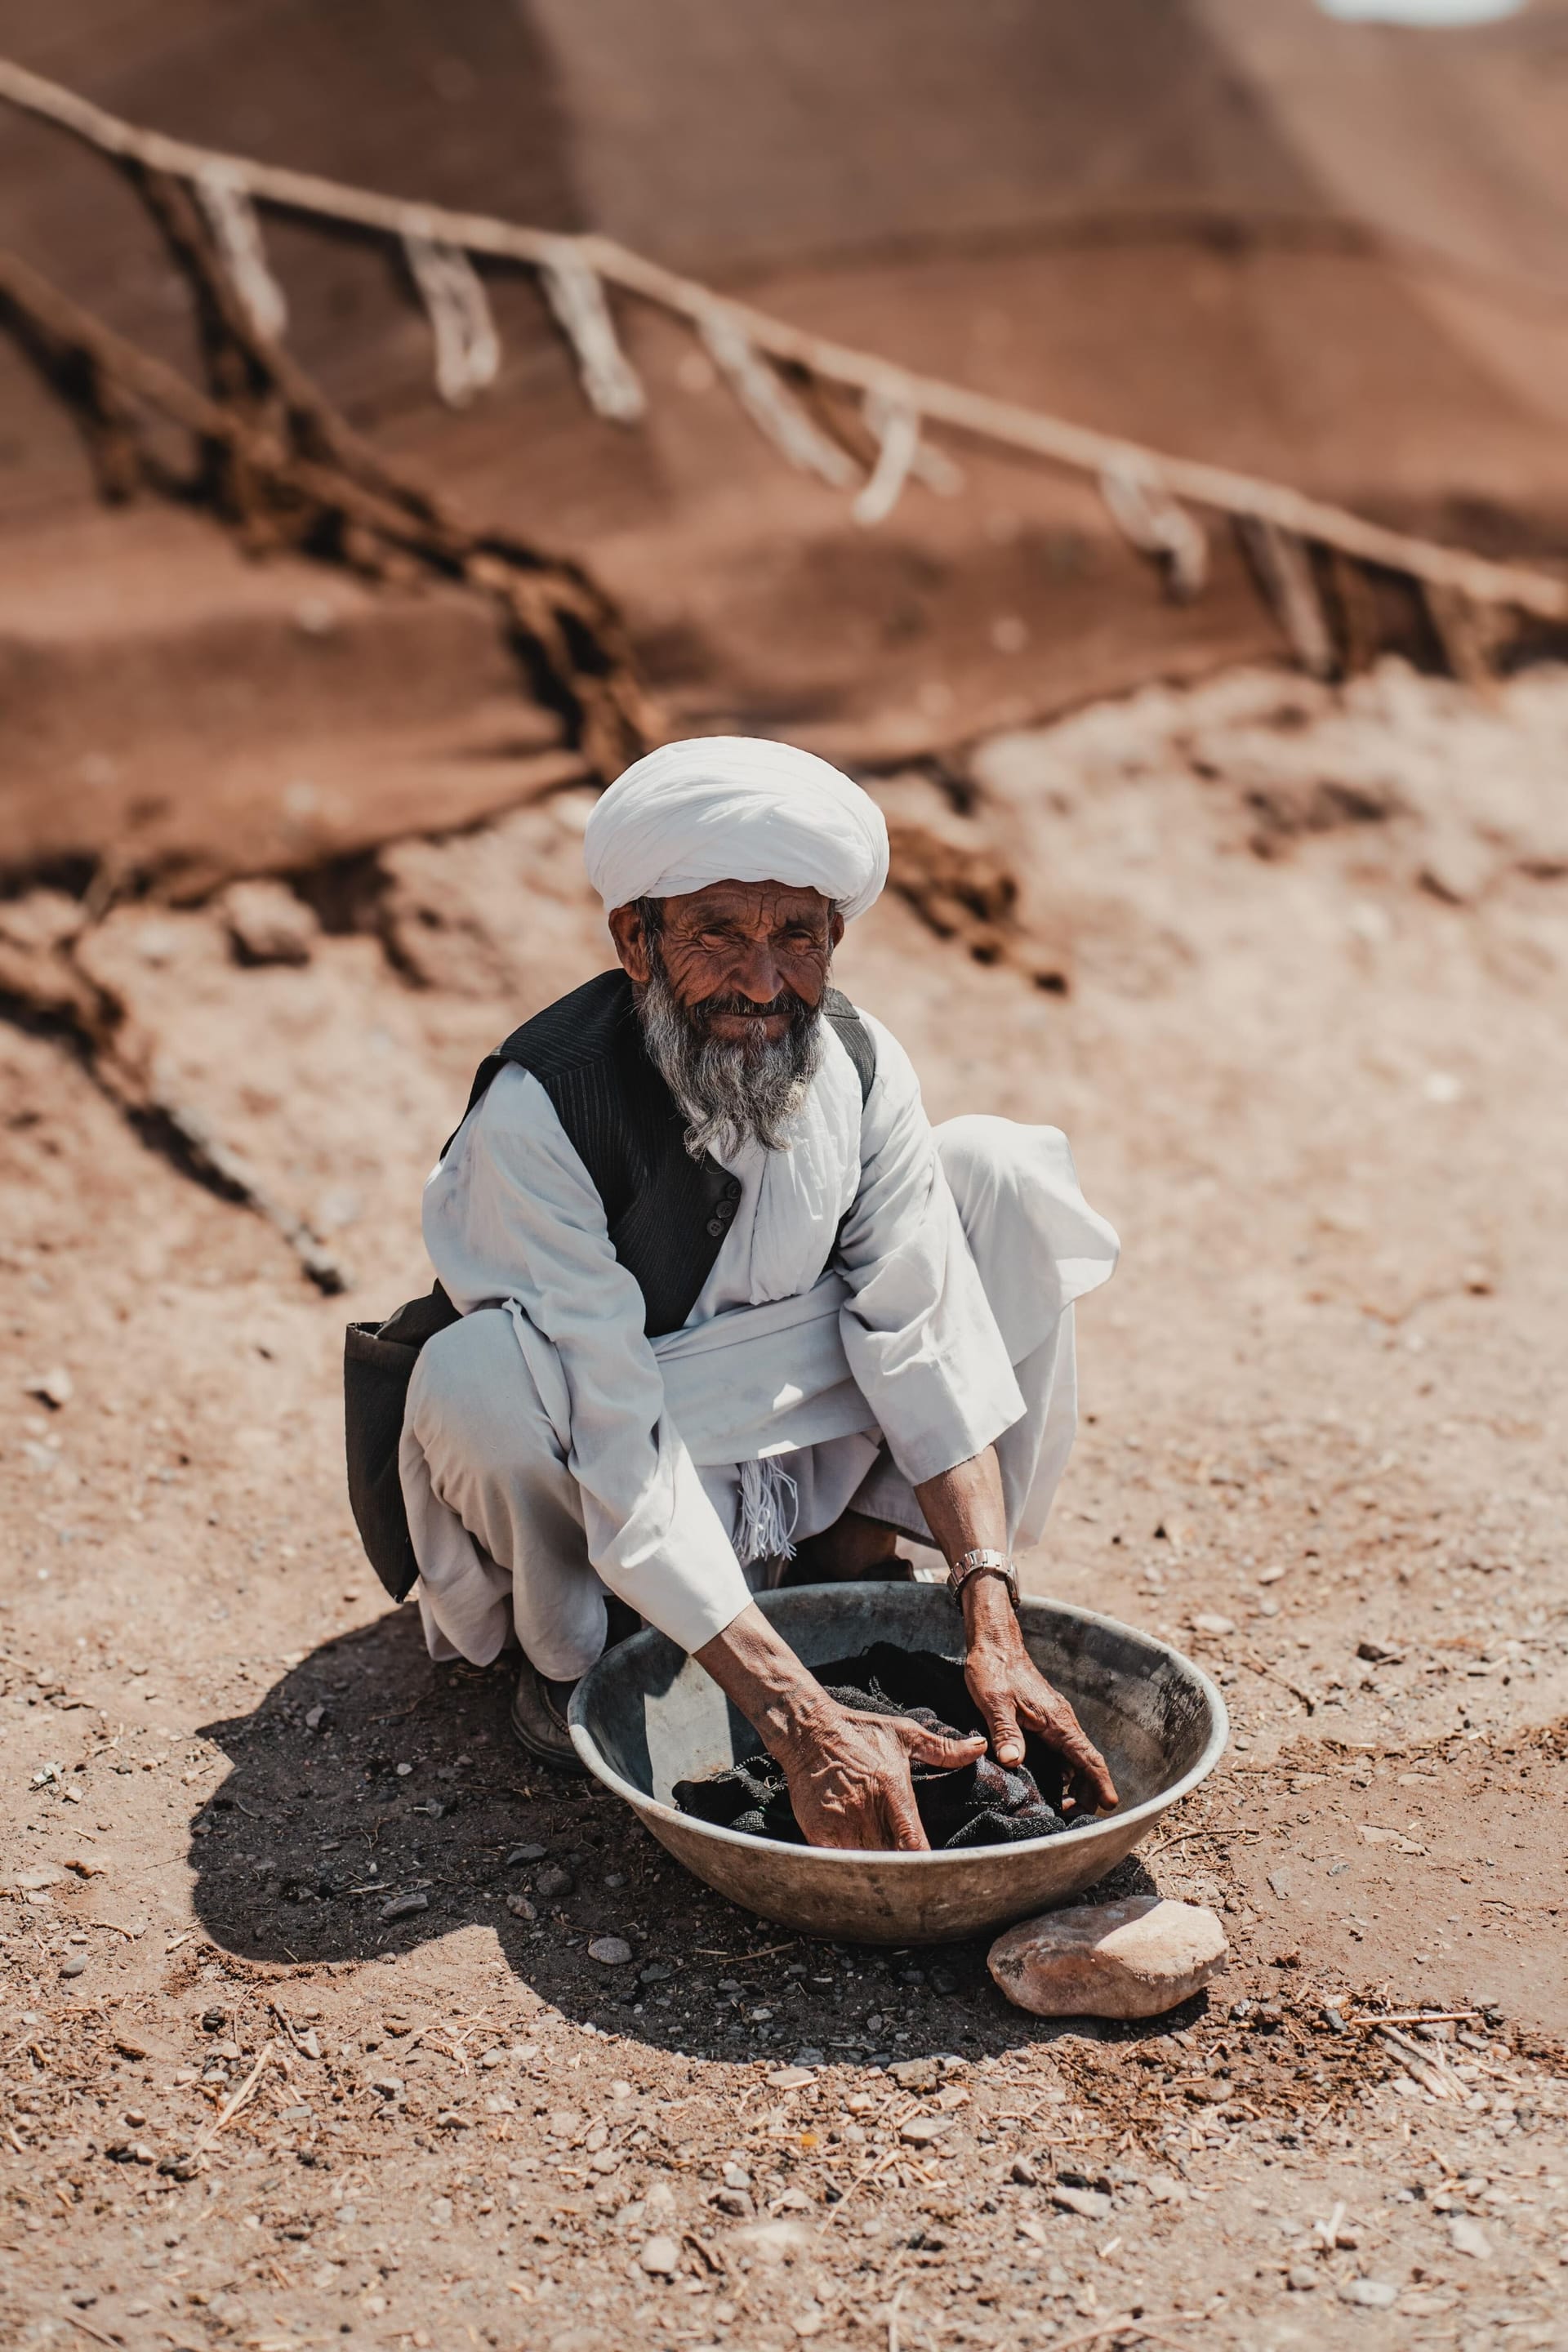 Ein alter Afghane wäscht seine Wäsche: "Wenn so alte Männer das hier selbst machen, bedeutet das meist, dass ihre Frau gestorben ist", erzählt Fotograf Martin Webelhaus.